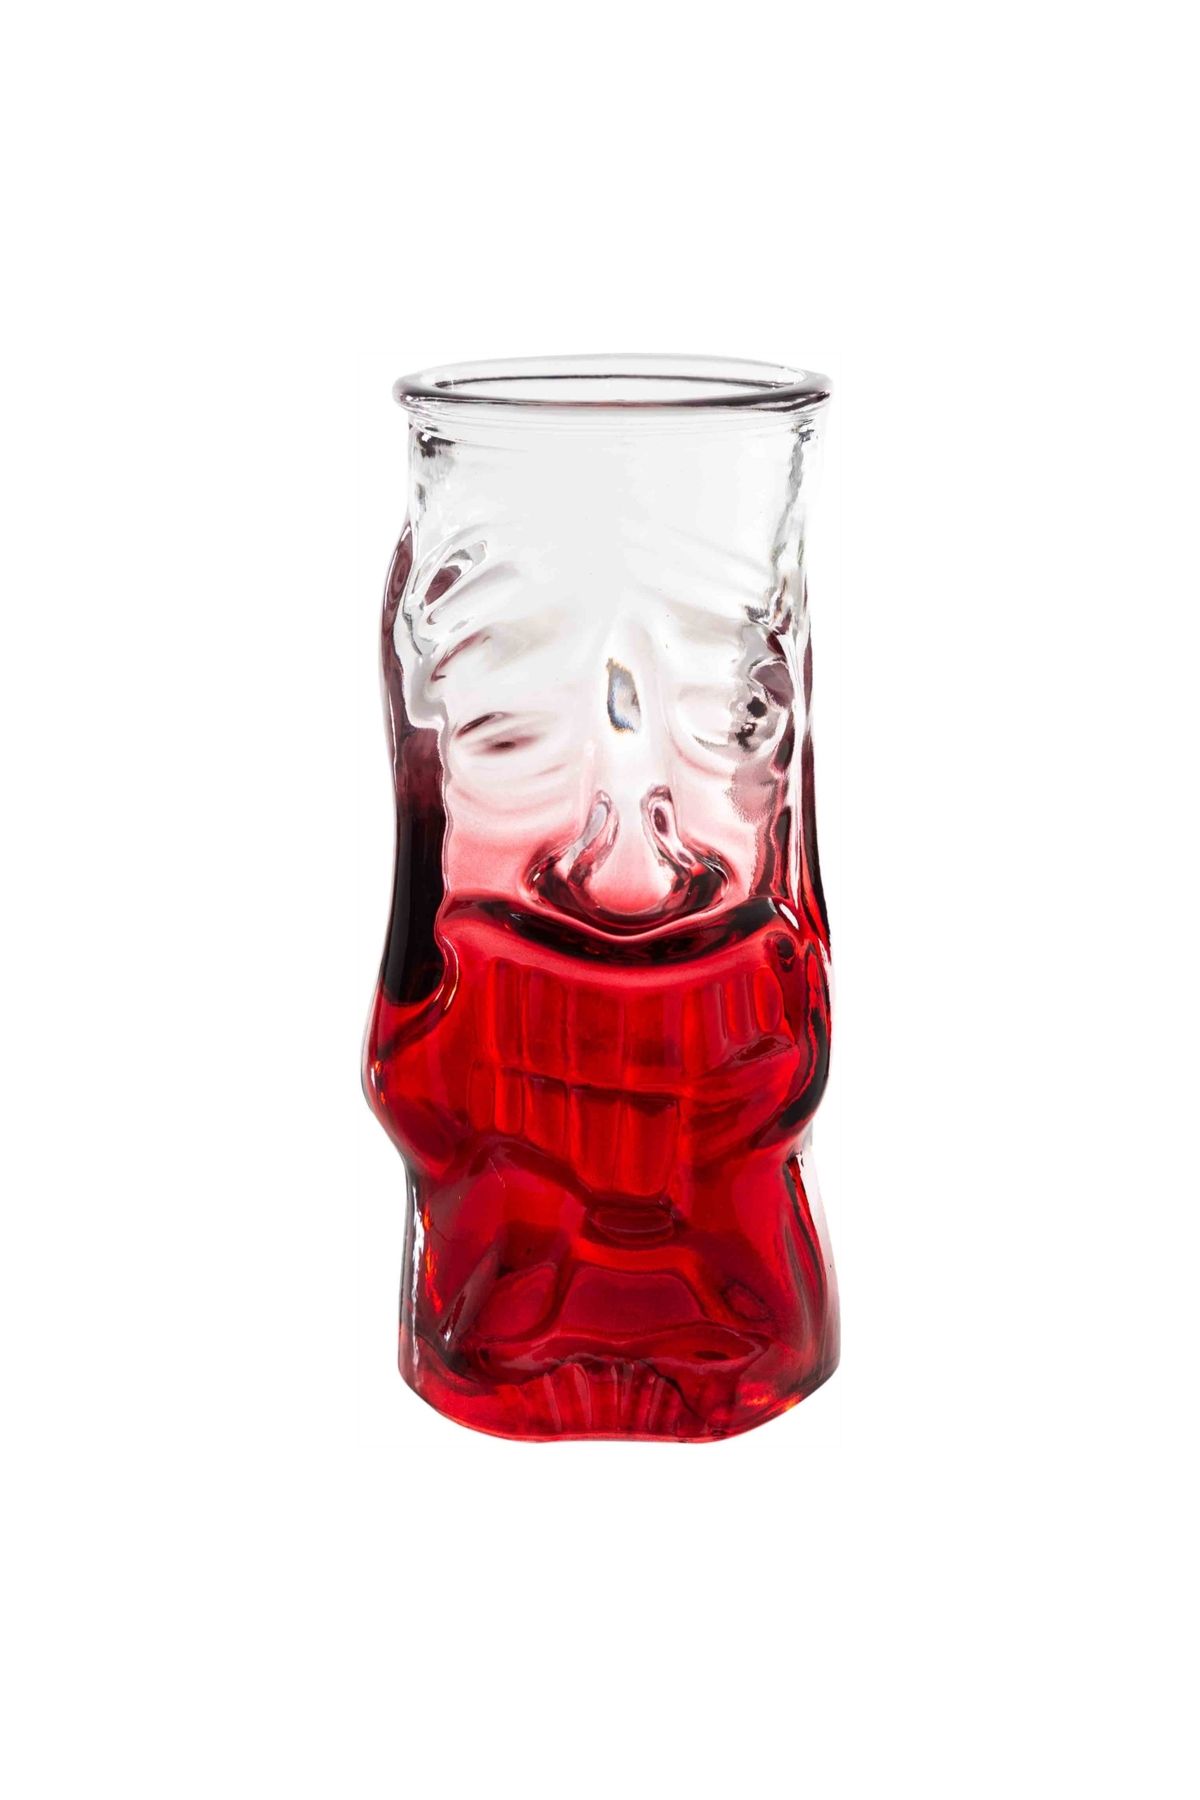 Mudo Concept Tıkı Kokteyl Bardağı Kırmızı -290 ml